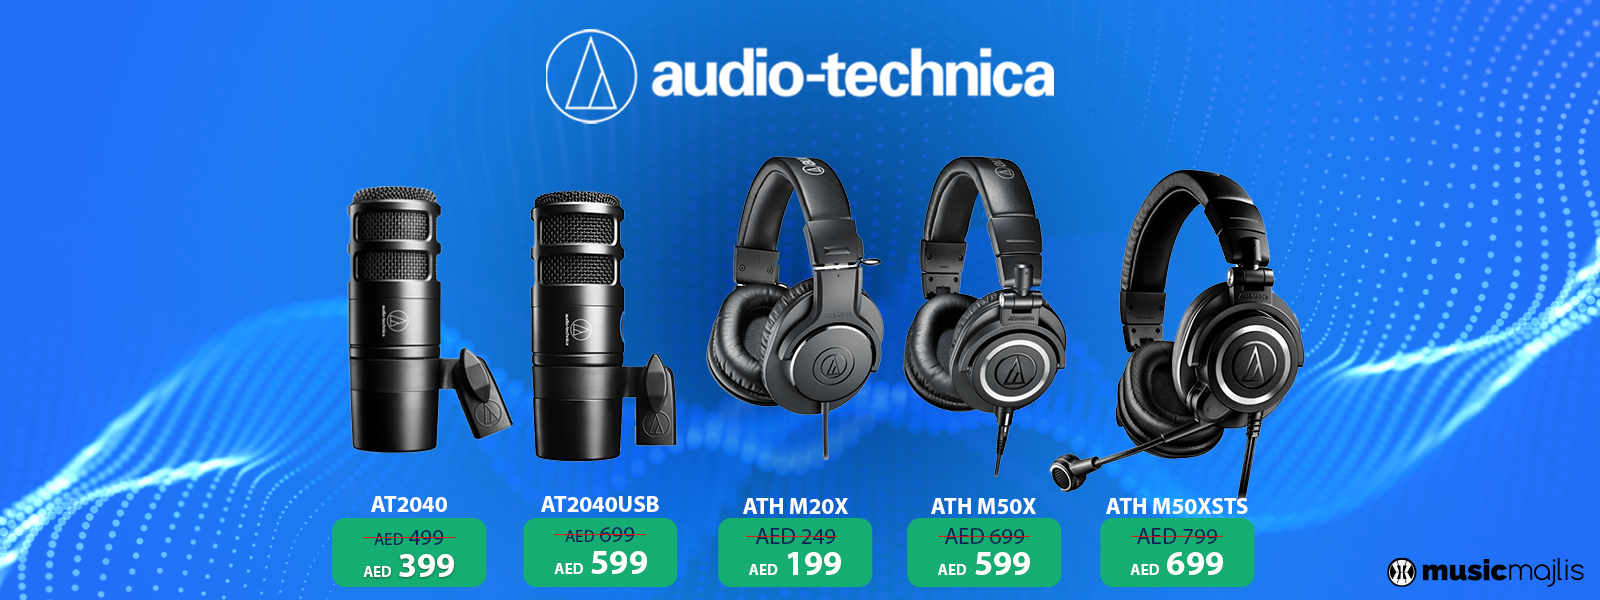 Upto 20% Discount on Audio Technica Headphones & Microphones